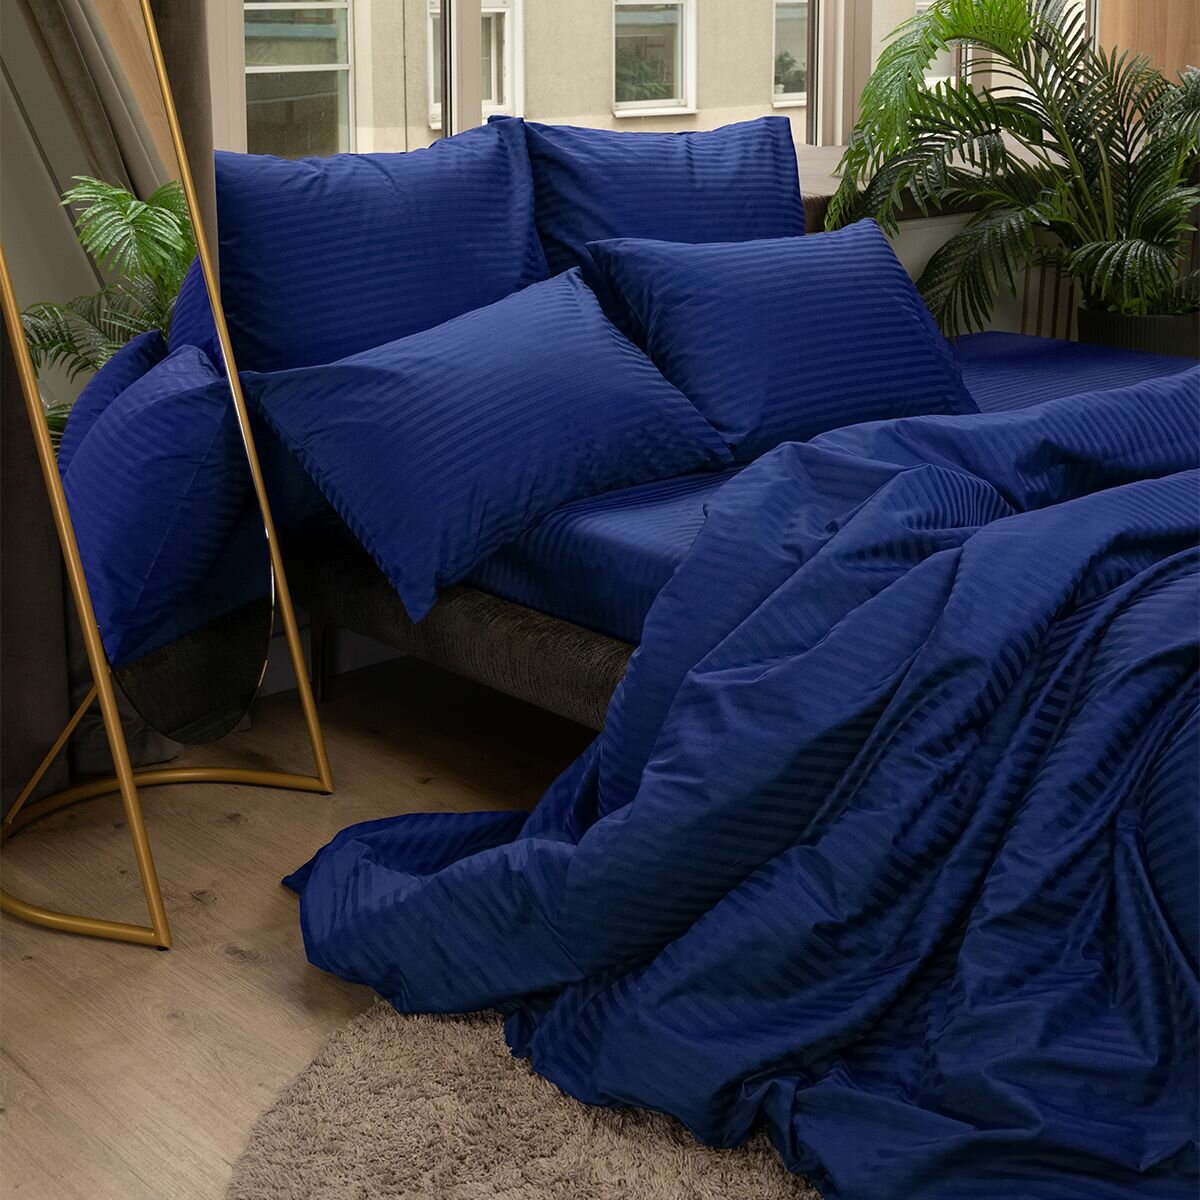 Комплект постельного белья Евро размер Monochrome Страйп сатин 100% хлопок / 4 наволочки /синий /премиум качество